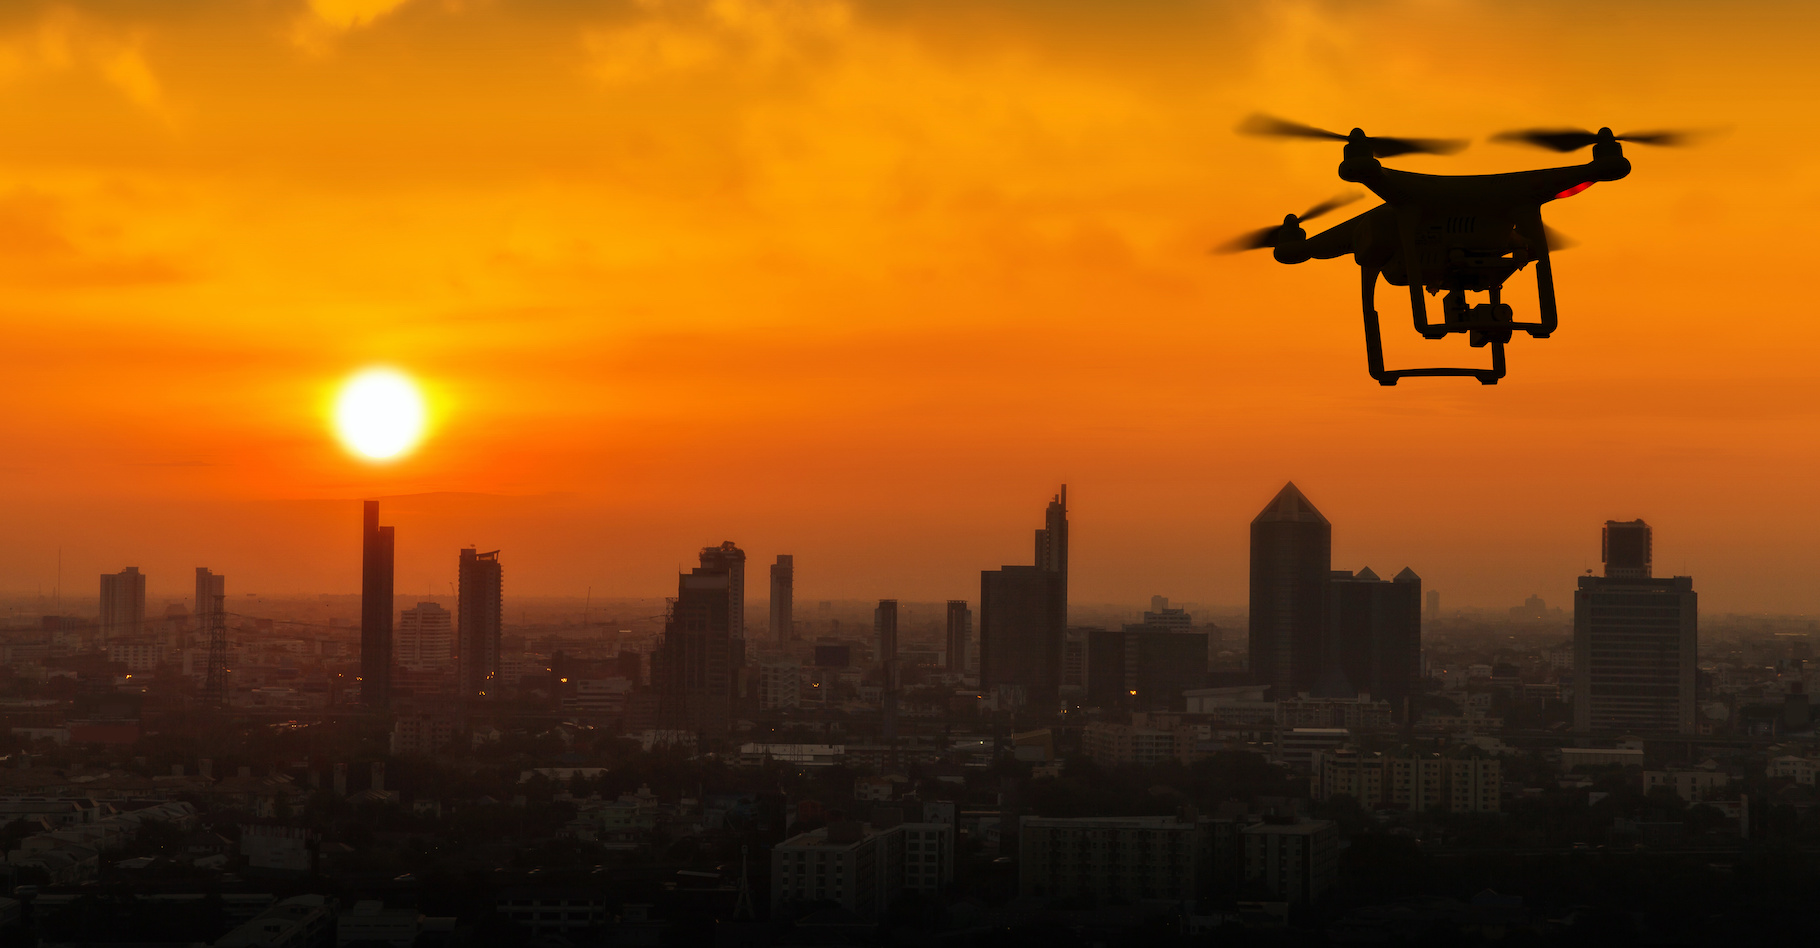 En exploitant une faille du Wi-Fi, le drone peut géolocaliser un appareil connecté. © Naypong Studio, Adobe Stock